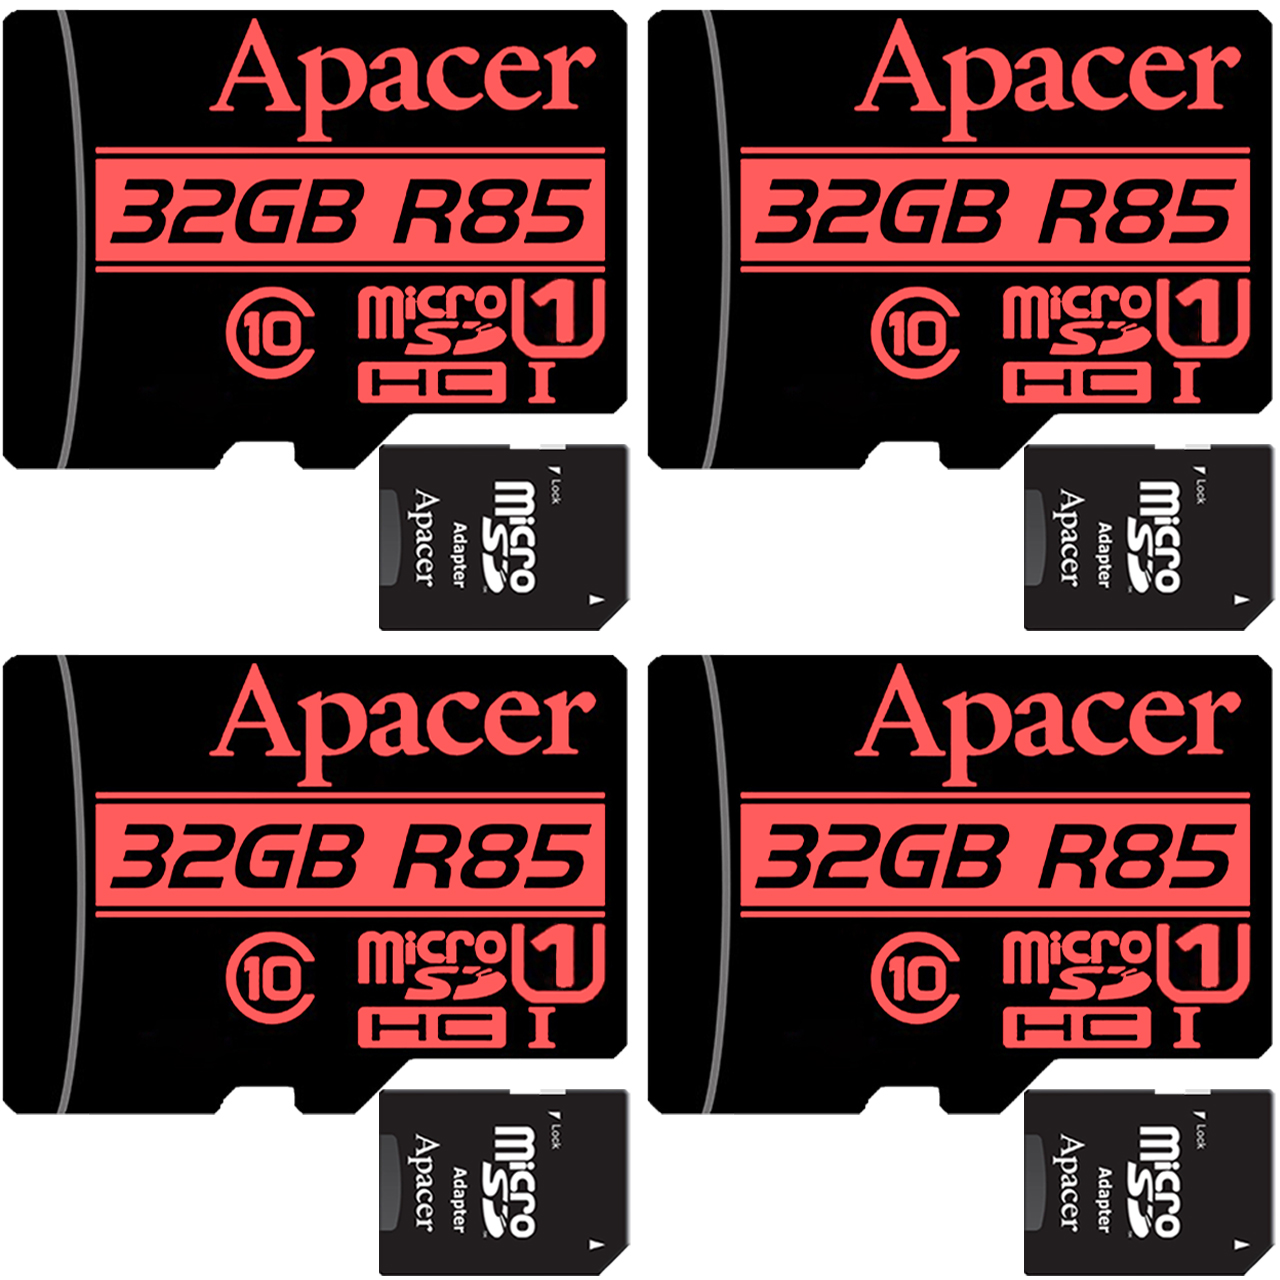 کارت حافظه microSDHC اپیسر مدل AP32G کلاس 10 استاندارد UHS-I U1 سرعت 85MBps ظرفیت 32 گیگابایت به همراه آداپتور SD بسته 4 عددی